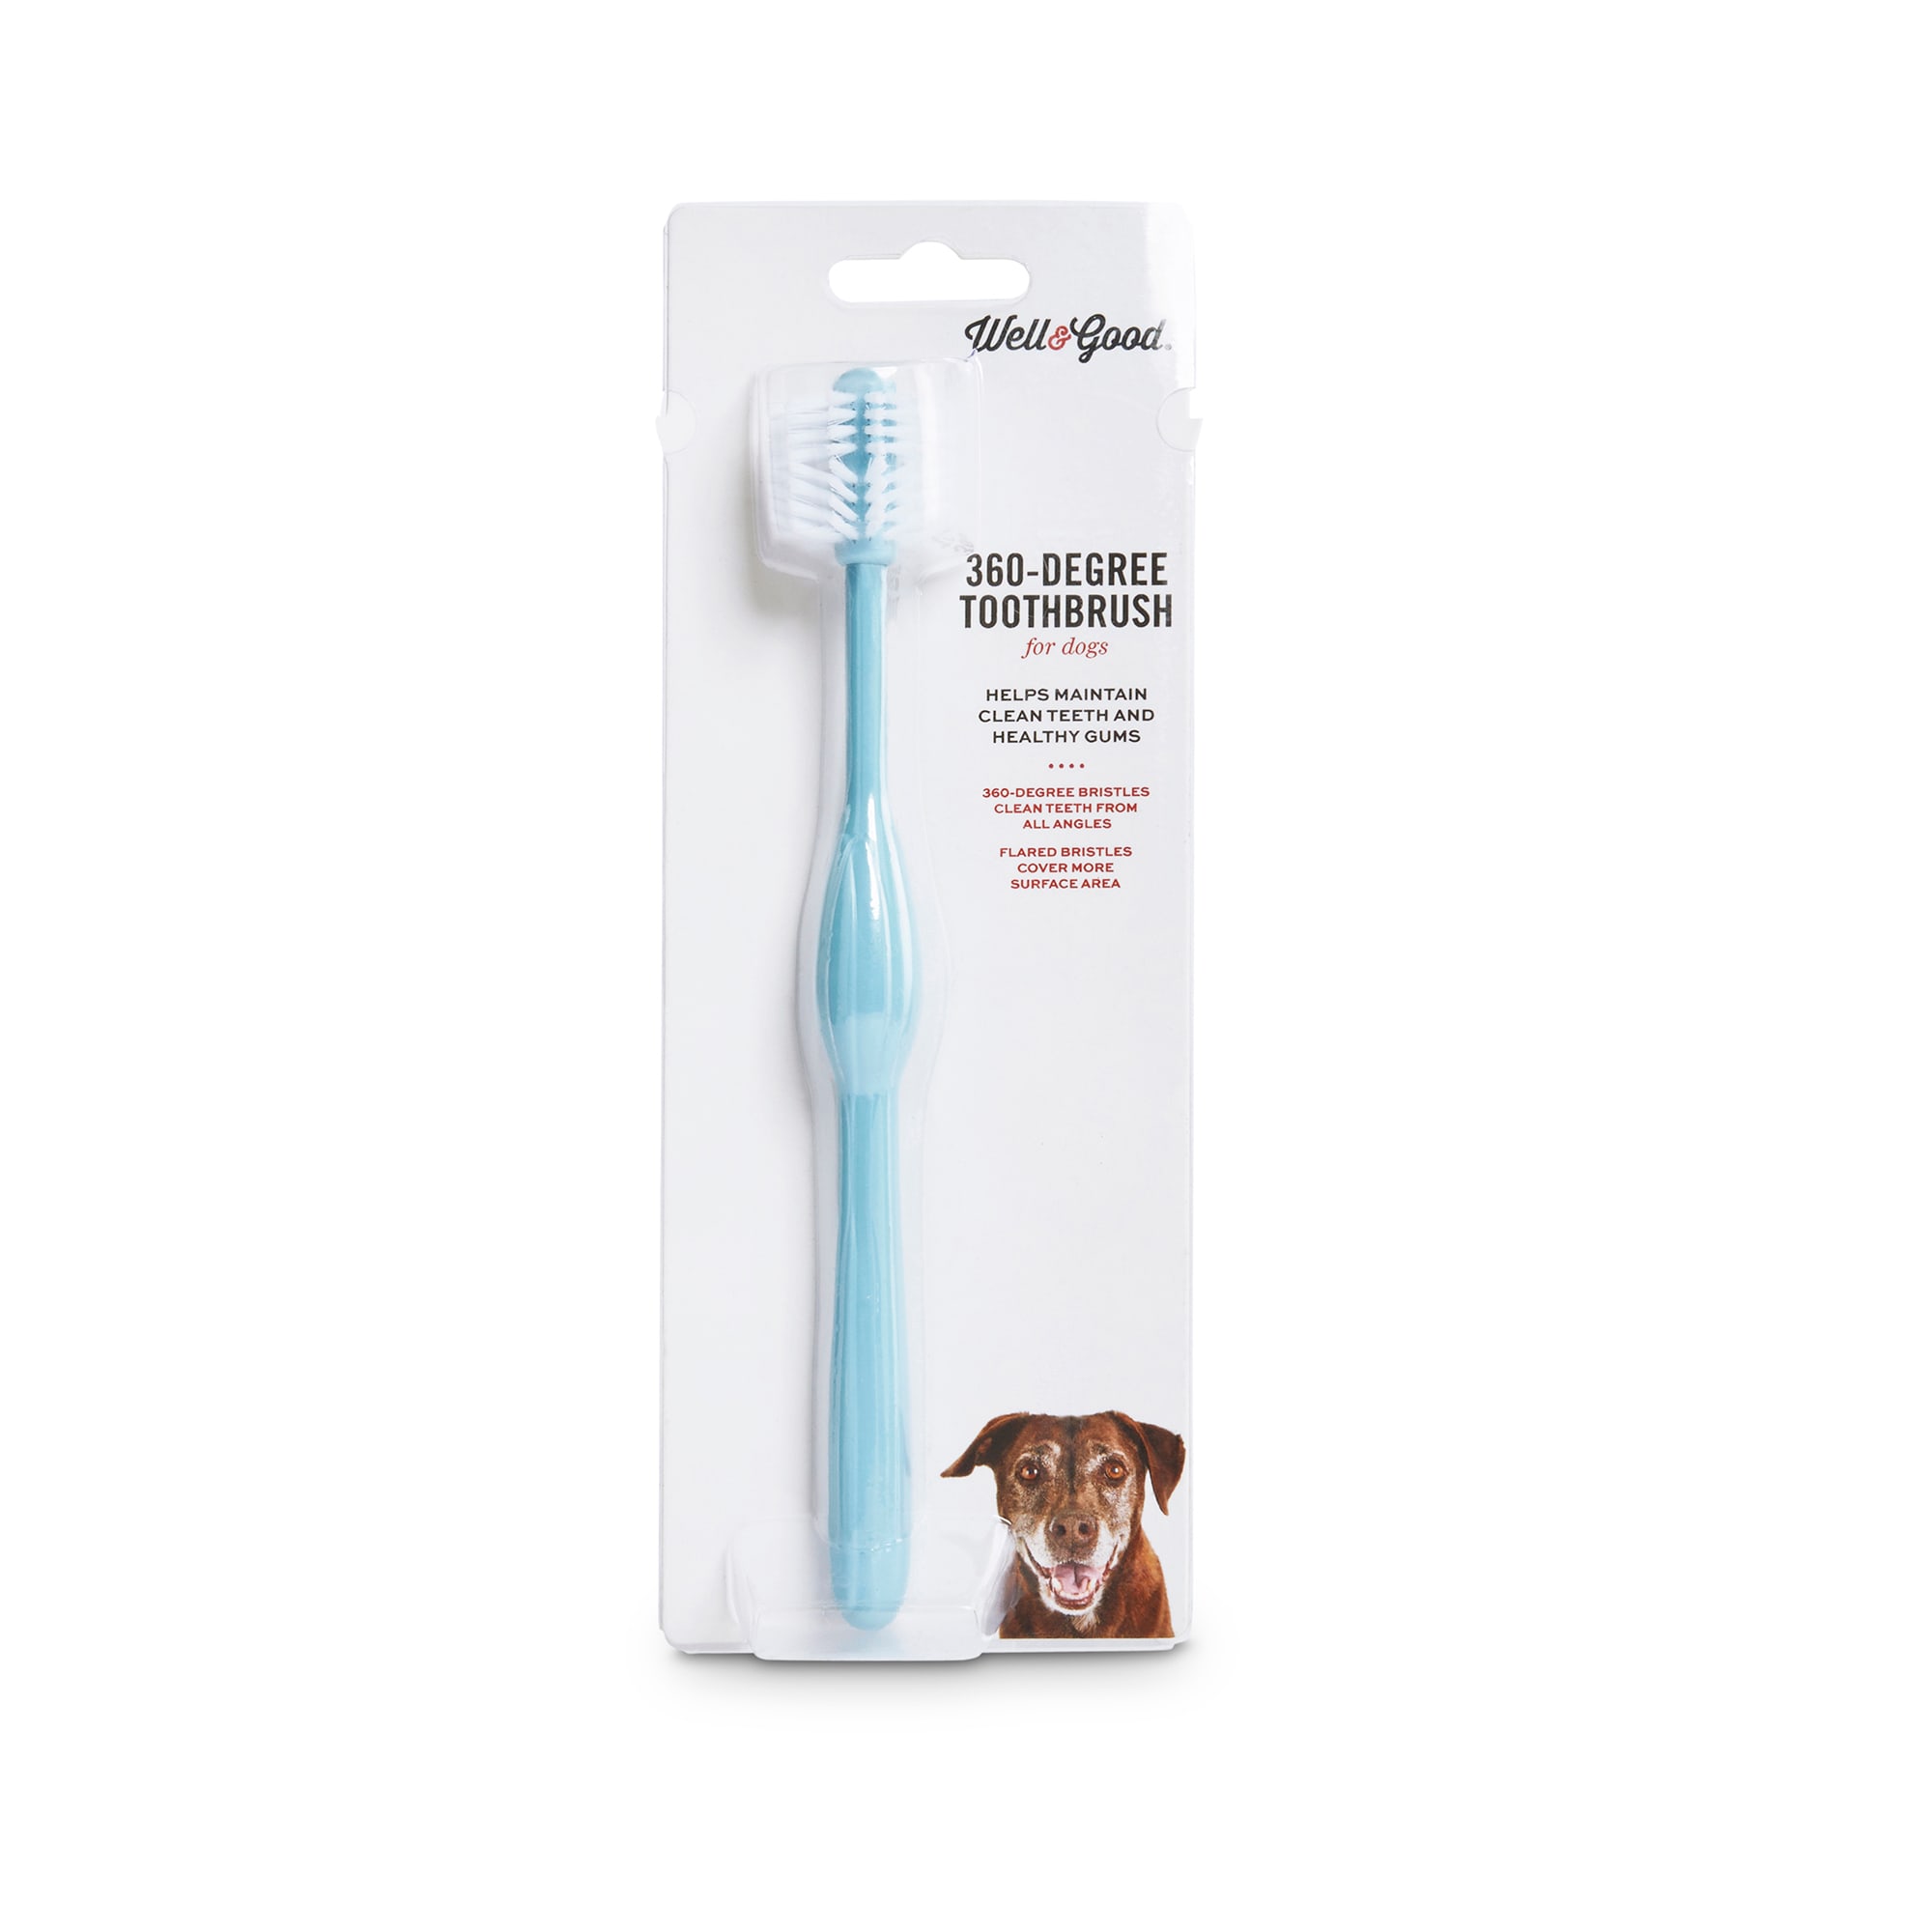 petco dog toothbrush